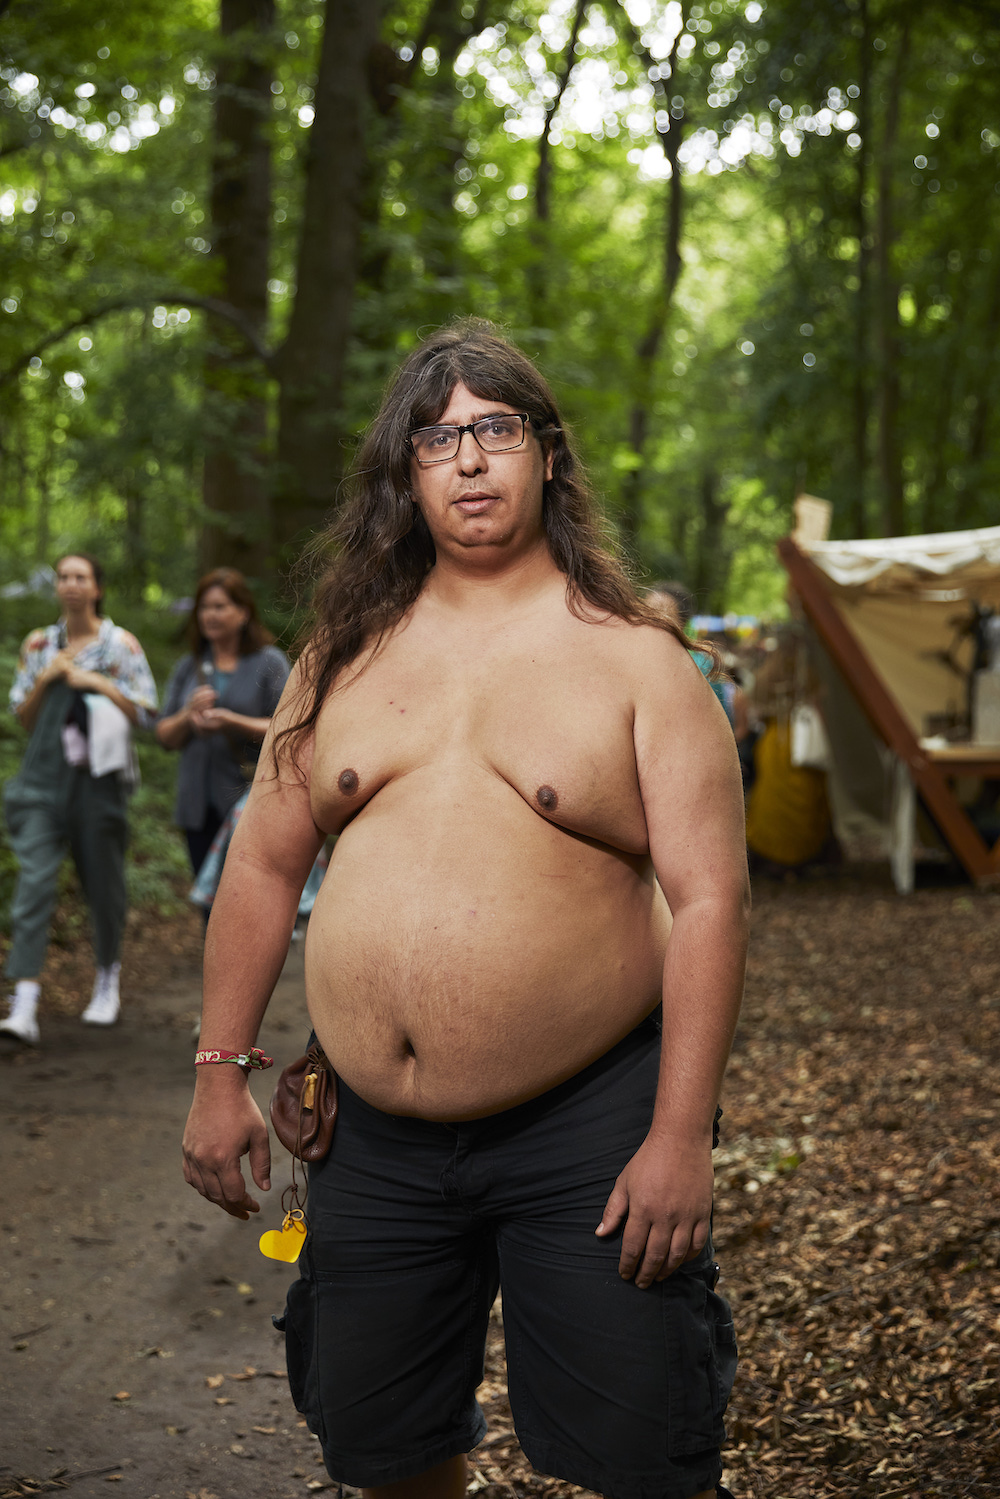 Ein übergewichtiger Mann mit langen dunklen Haare und Brille steht oberkörperfrei in einem Wald